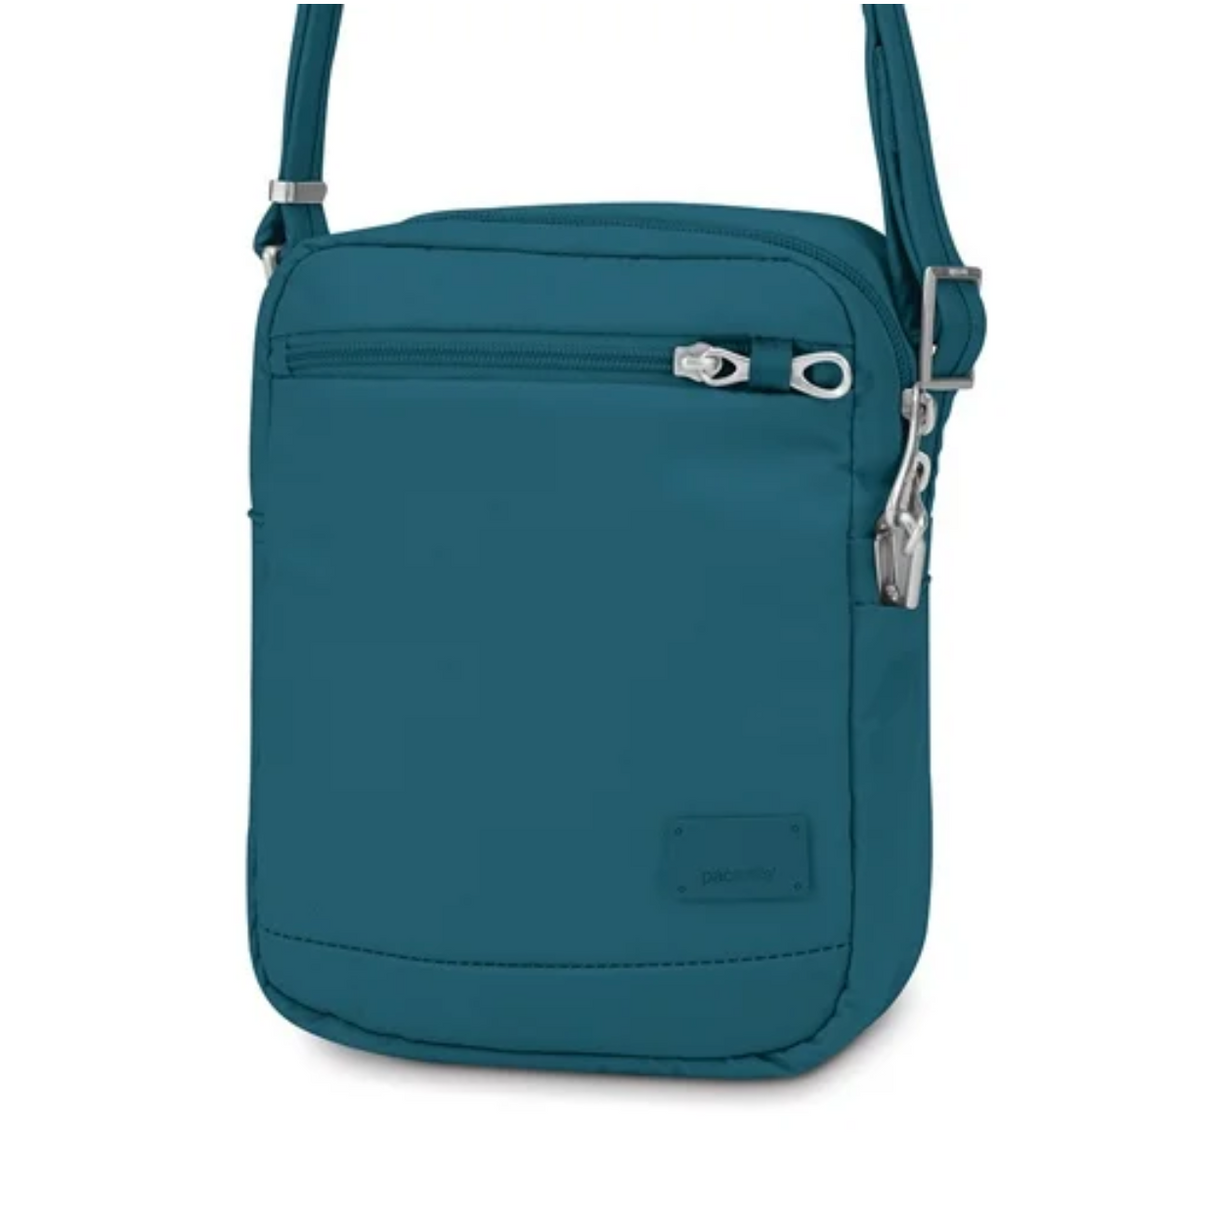 Pacsafe Citysafe CS75 cross body travel anti-theft handbag